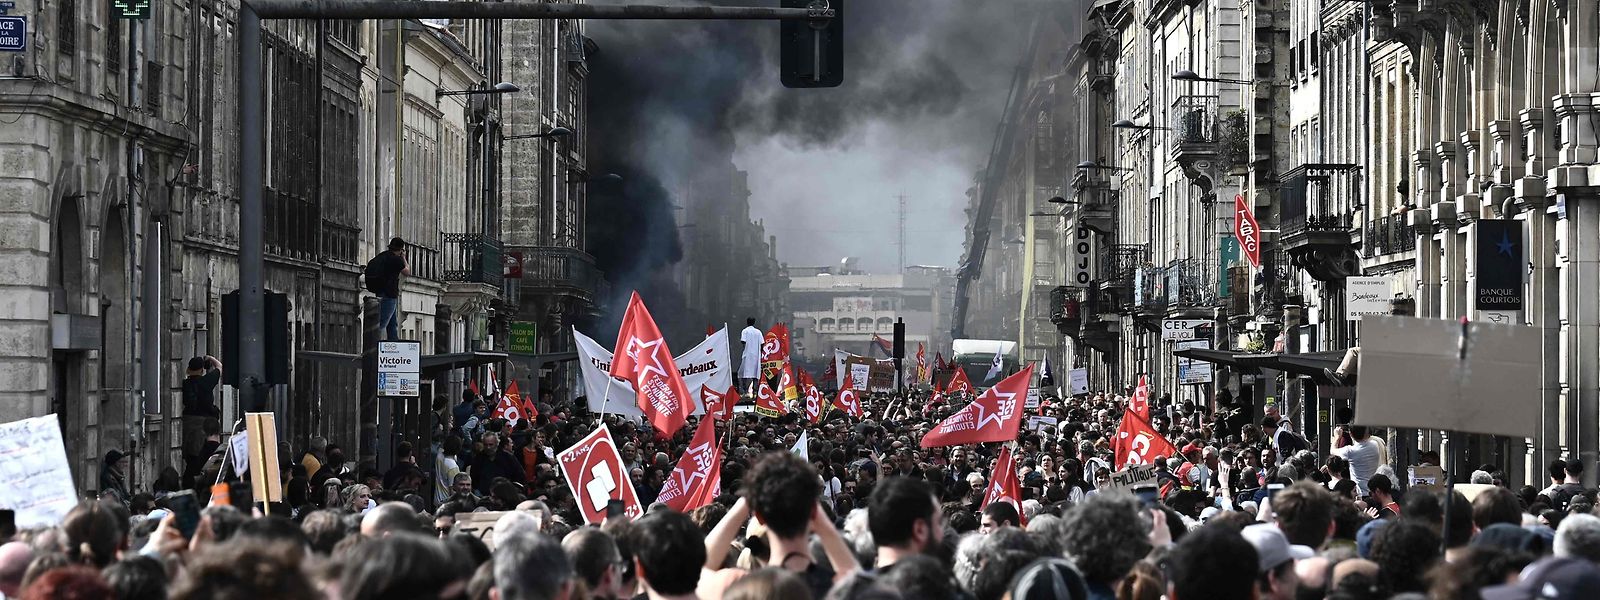 Die Streiks und Proteste gegen die Rentenreform haben sich in Frankreich in den vergangenen Wochen wie hier in Bordeaux zugespitzt.